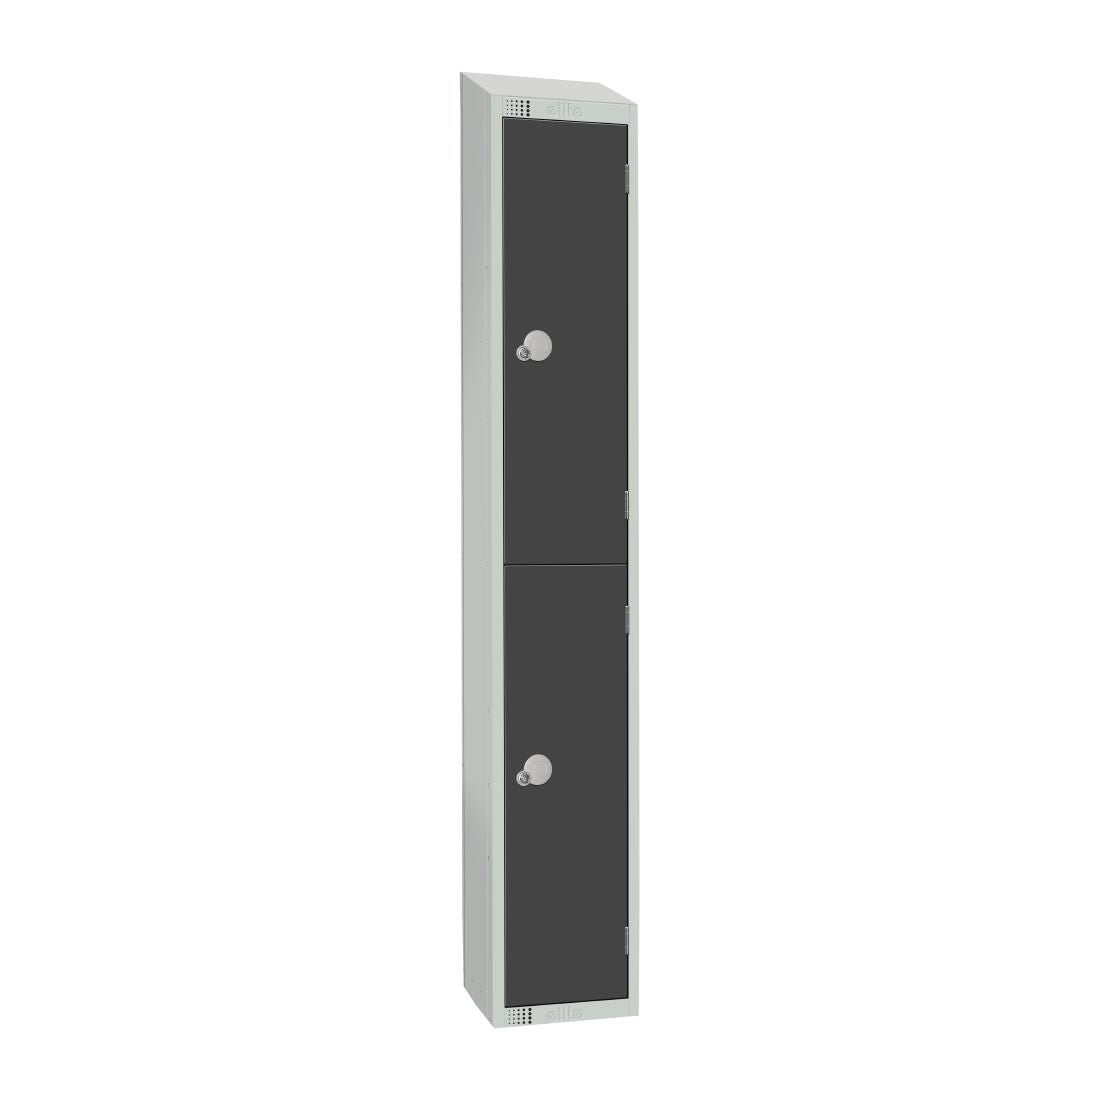 Elite Double Door Padlock Locker with Sloping Top JD Catering Equipment Solutions Ltd